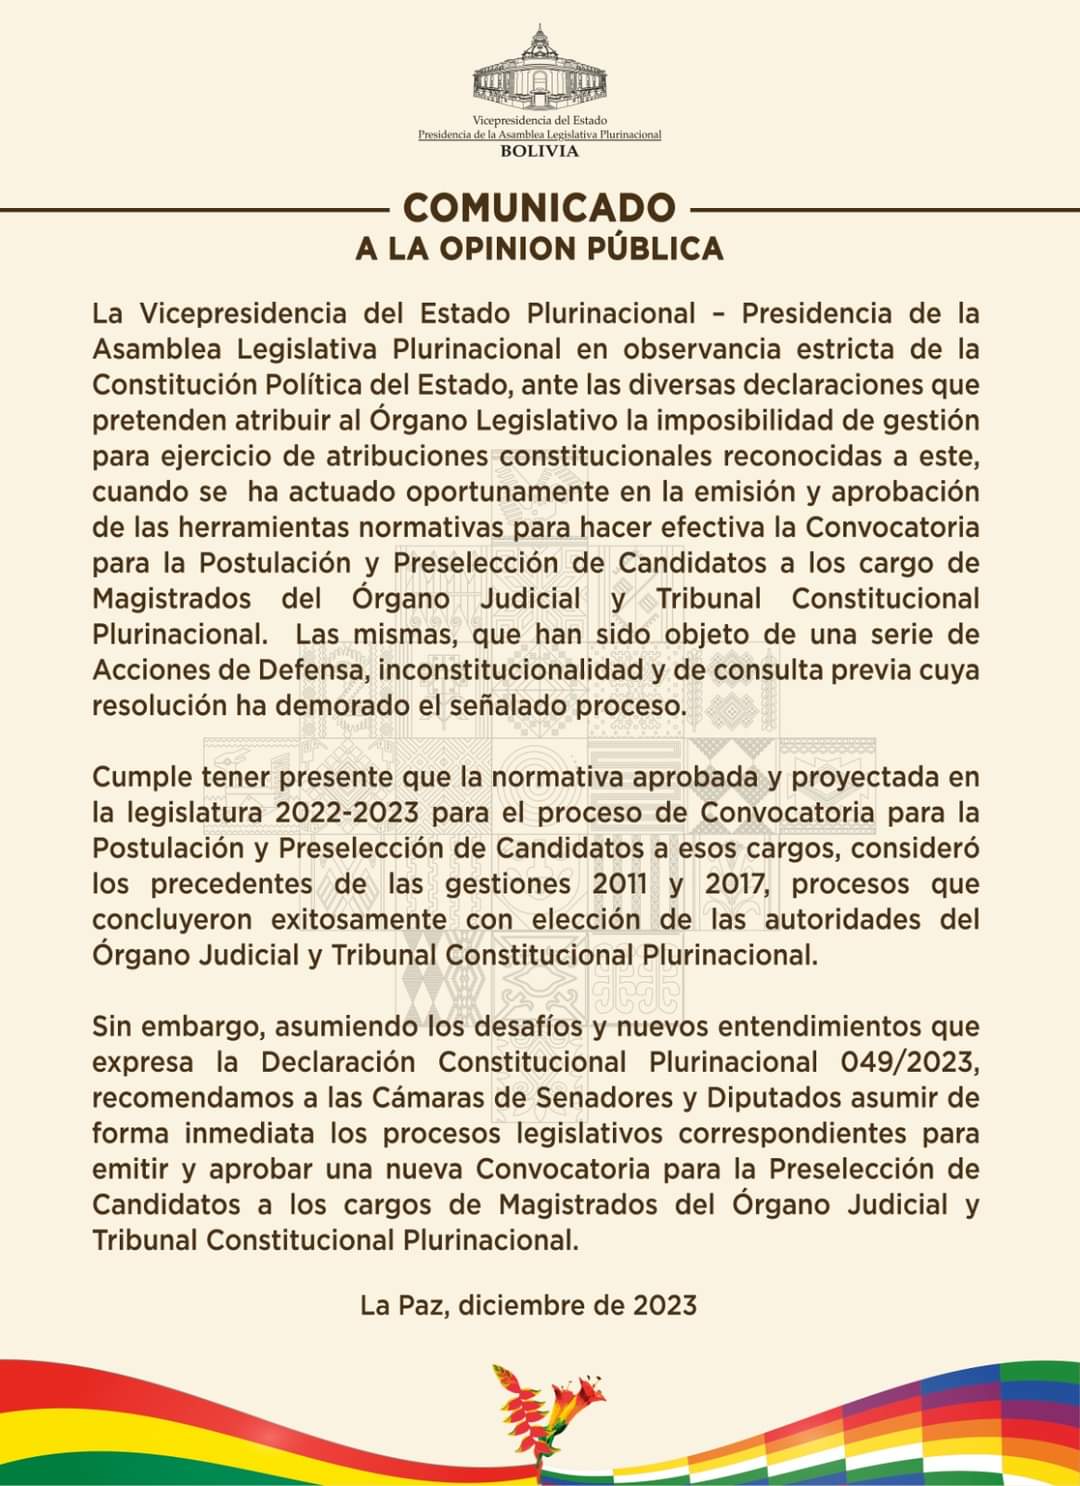 Presidencia De La Alp Aclara Que La Convocatoria Para La Preselección De Magistrados Del Órgano 0176